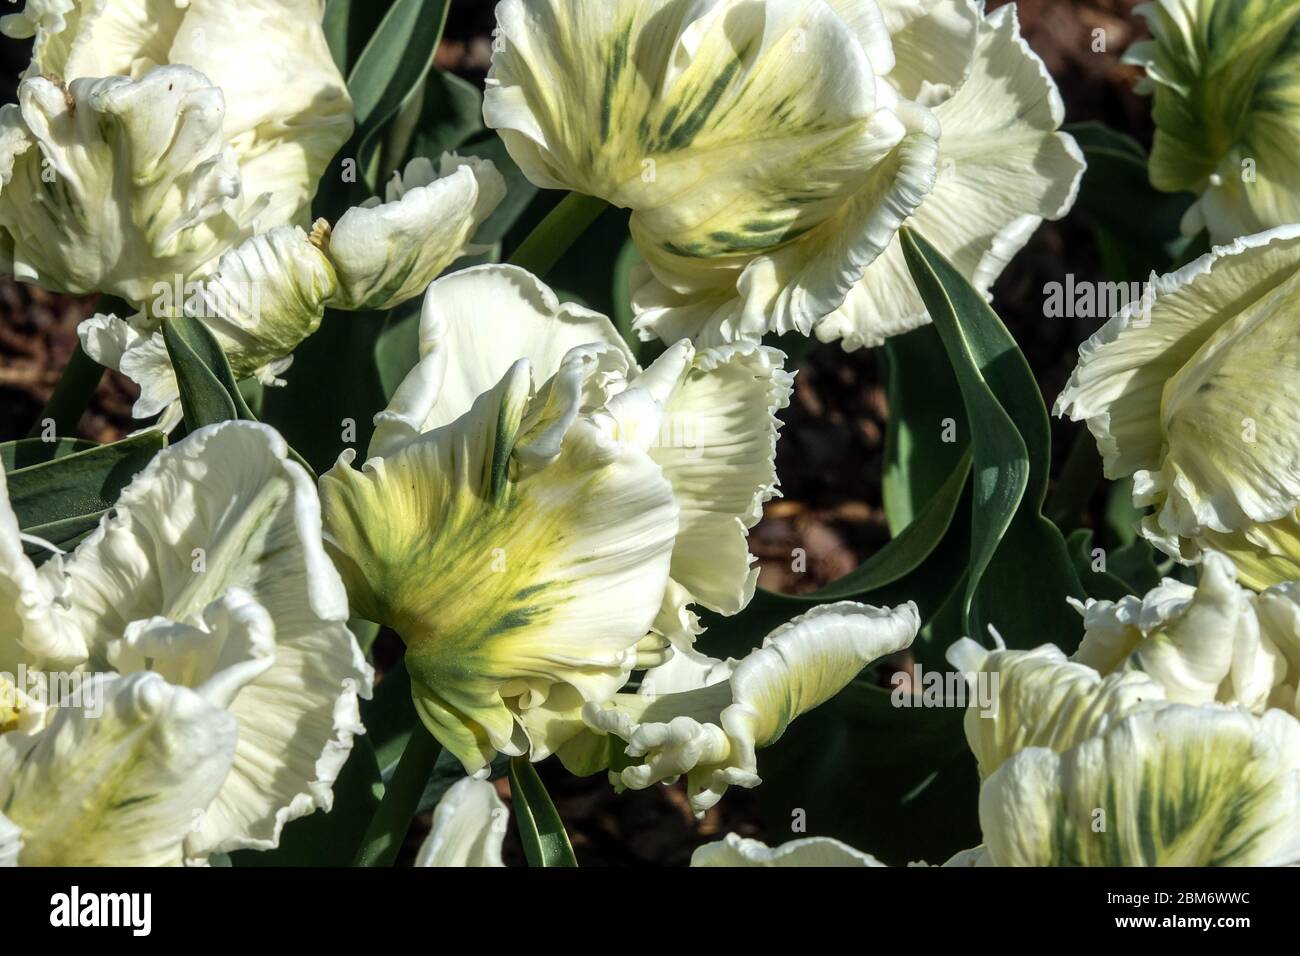 Tulipes blanches 'Super Parrot' fleurs tulipes Tulipa fleurs blanches volantes pétales torsadées plumées vert perroquets blancs tulipes floraison lit de fleurs blanc Banque D'Images